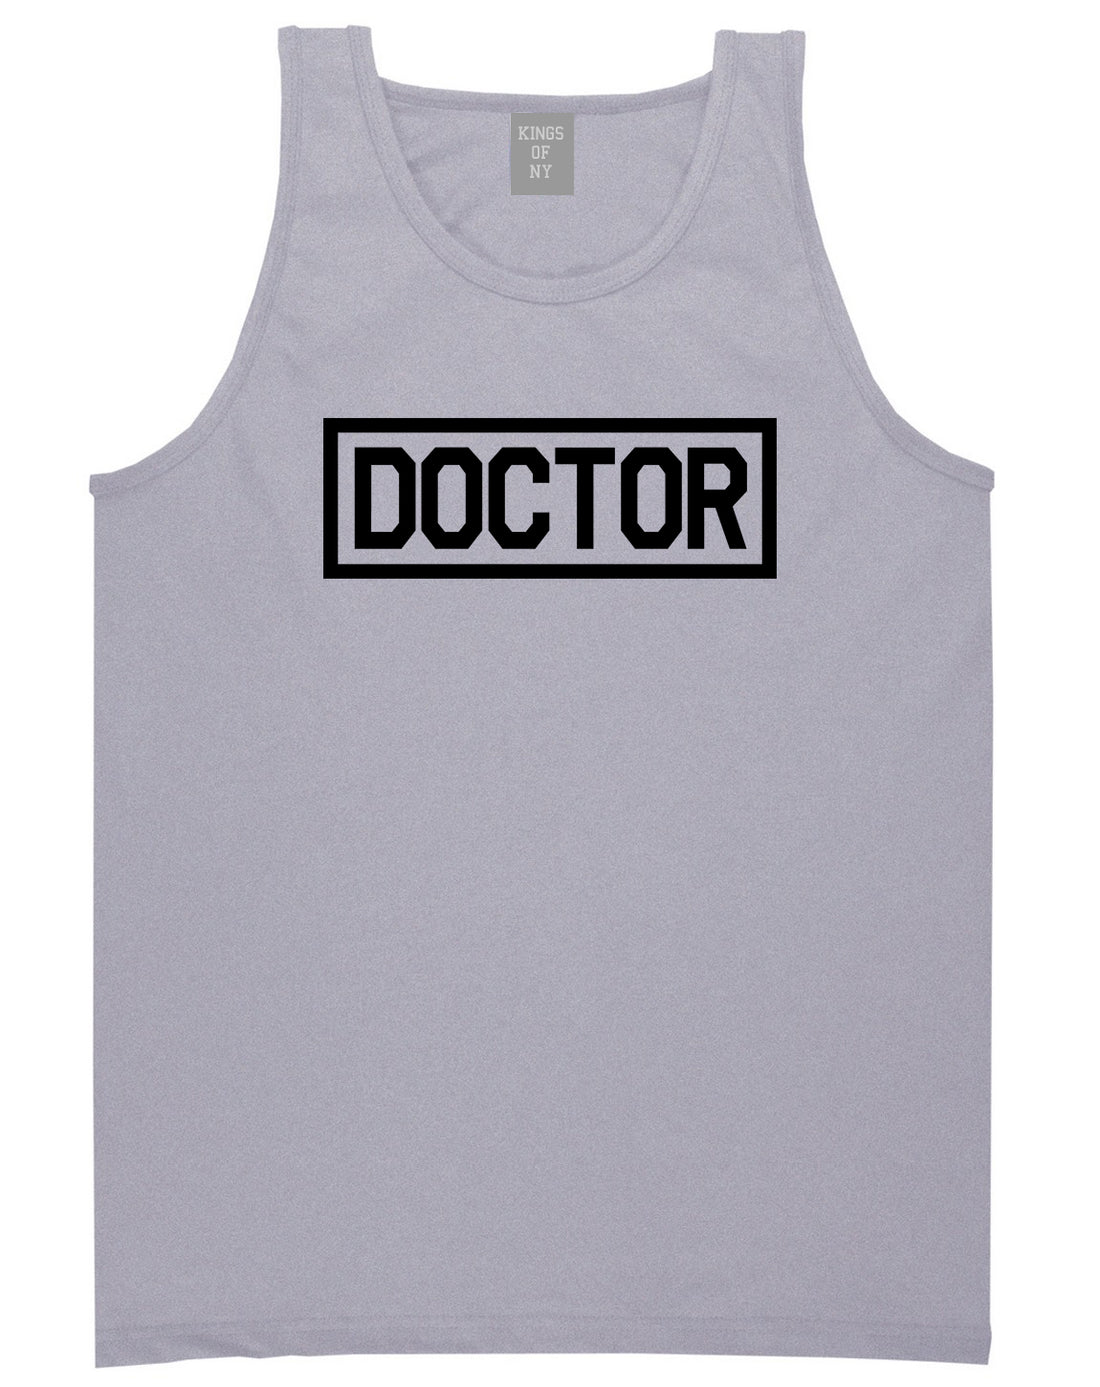 Doctor_Box_Logo Mens Grey Tank Top Shirt by Kings Of NY